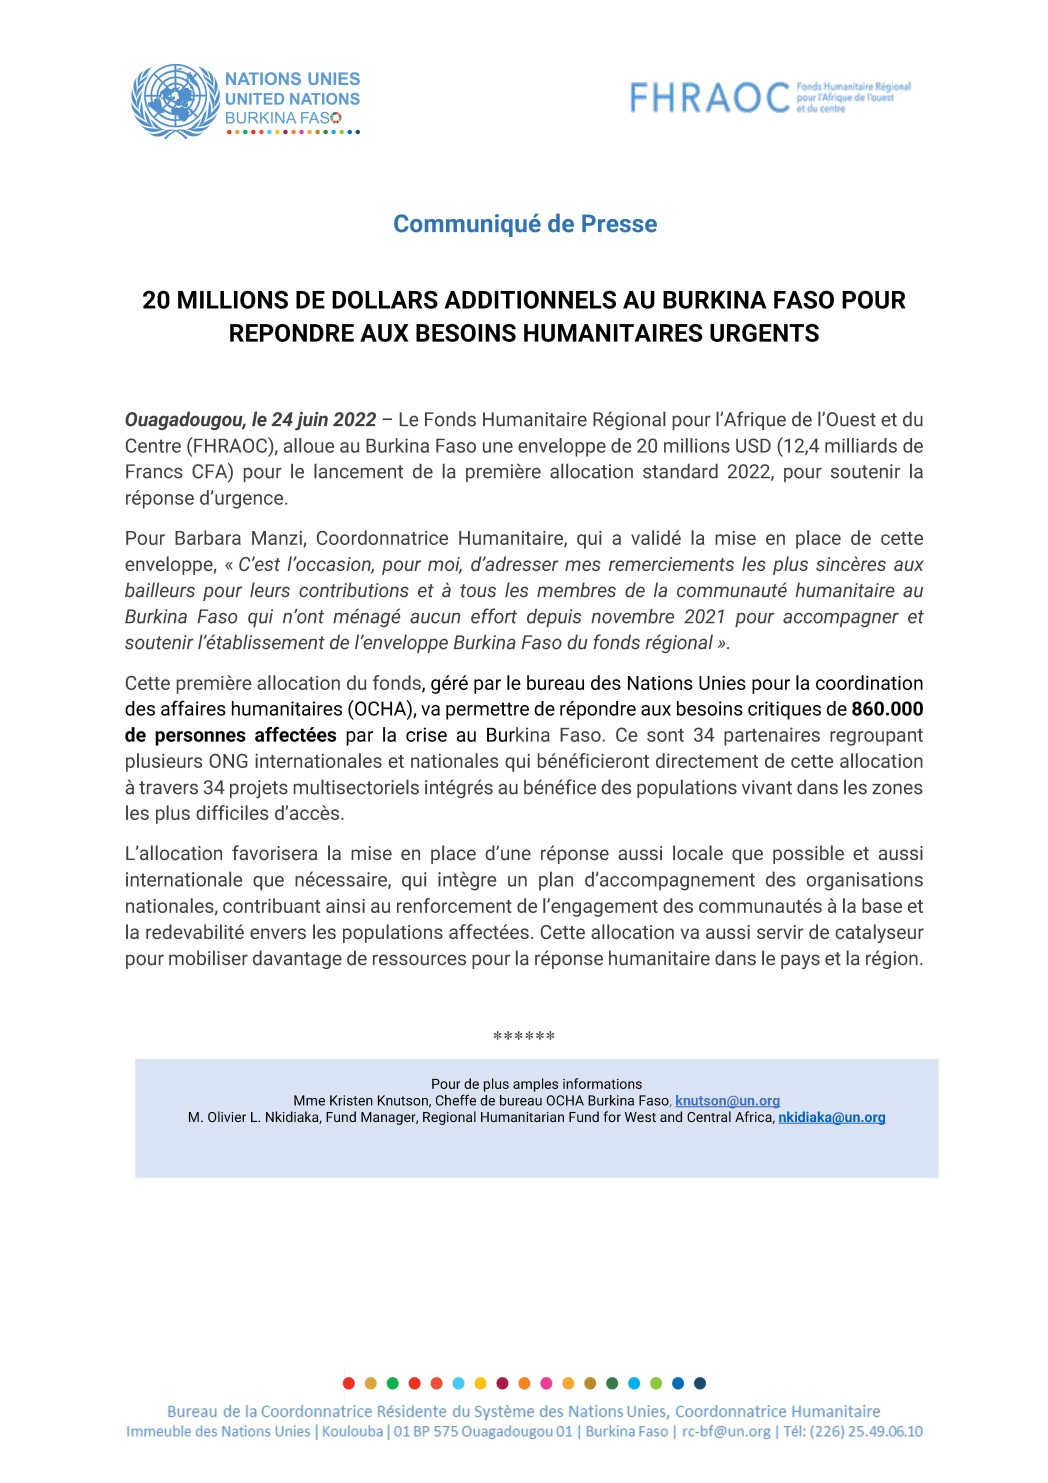 Communiqué de Presse: 20 MILLIONS DE DOLLARS ADDITIONNELS AU BURKINA FASO POUR  REPONDRE AUX BESOINS HUMANITAIRES URGENTS